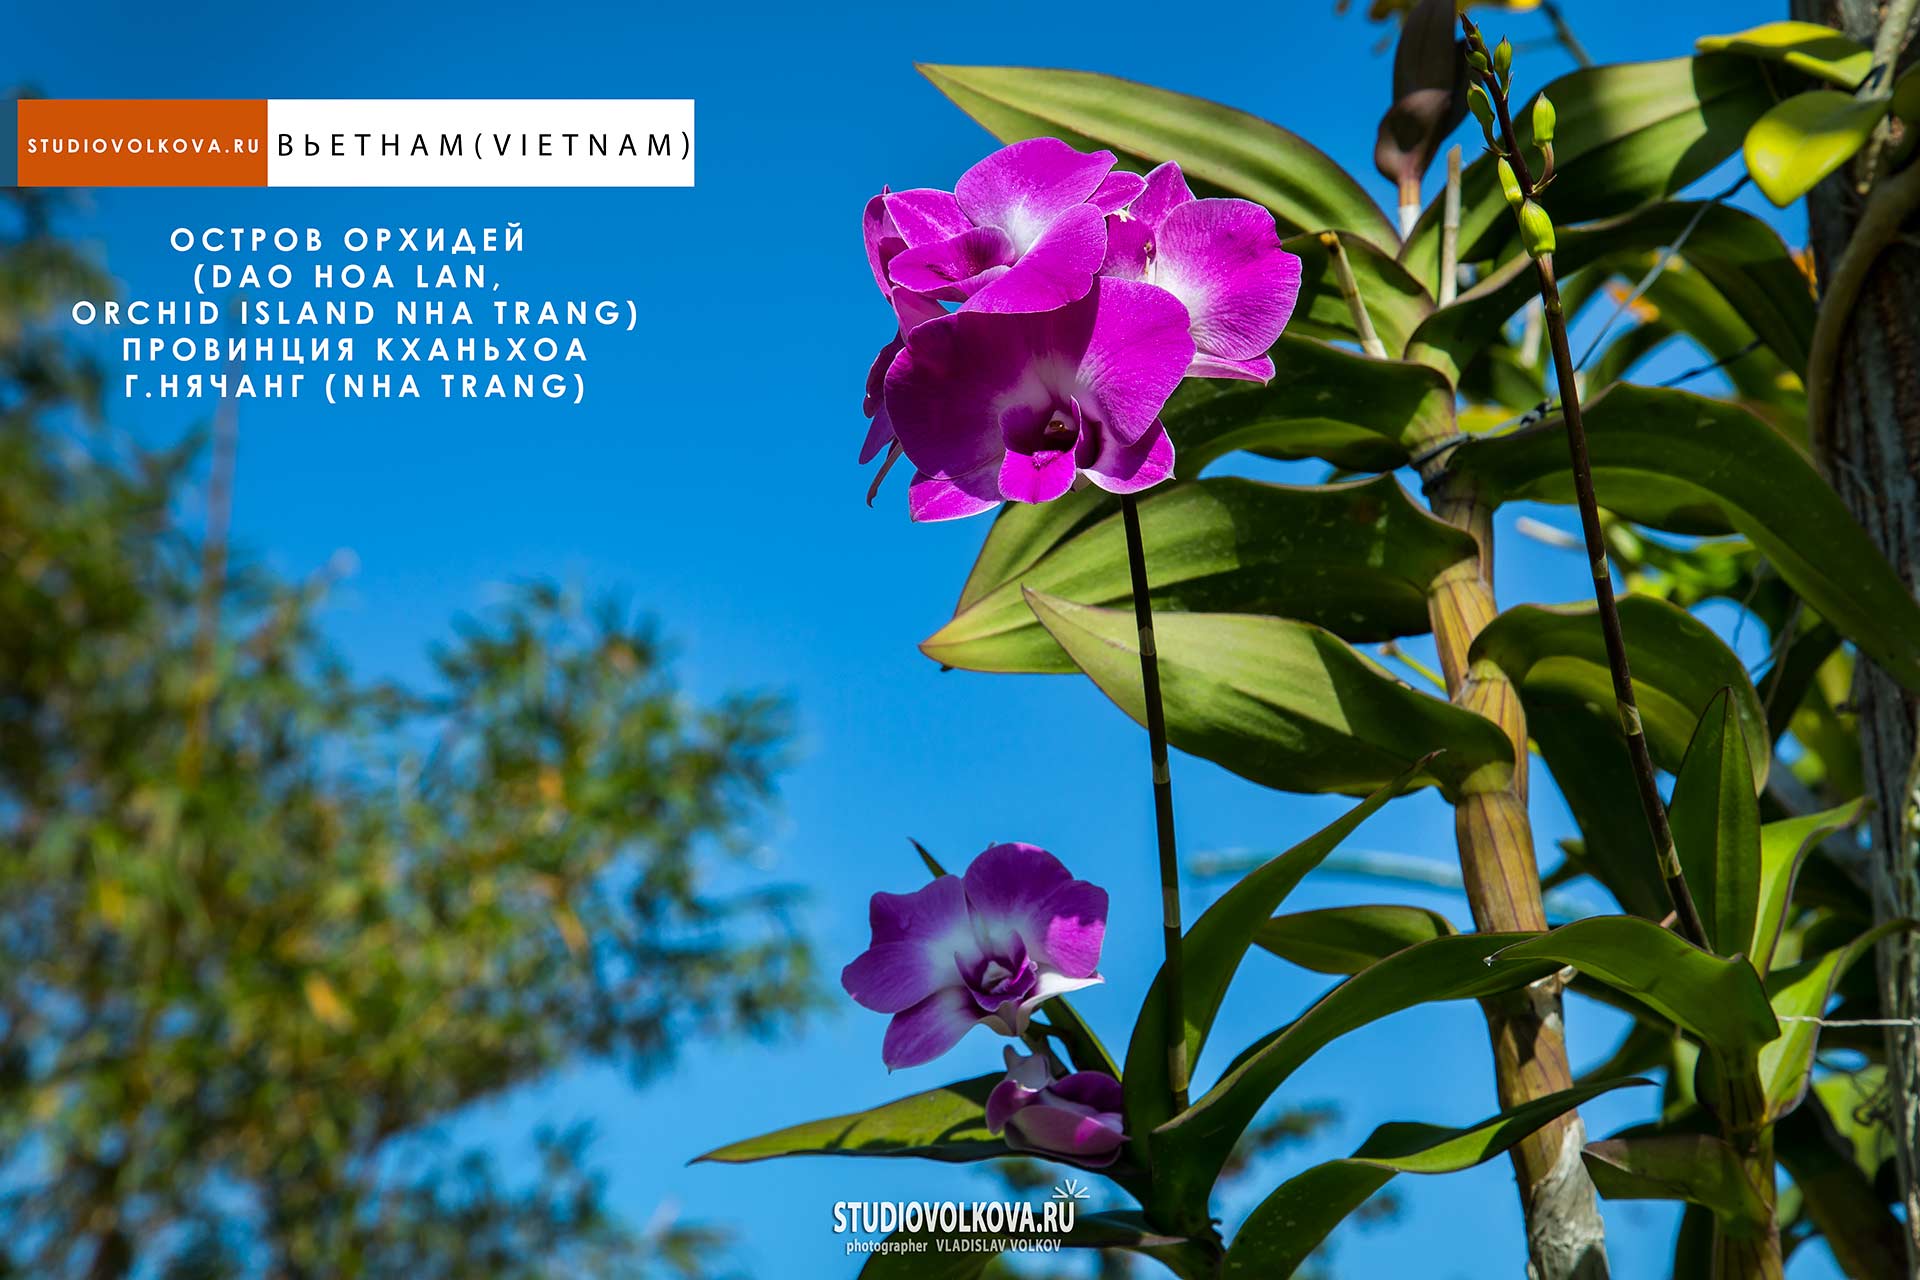 Остров Орхидей (Dao Hoa Lan, Orchid island Nha Trang). фотограф Владислав ВОЛКОВ